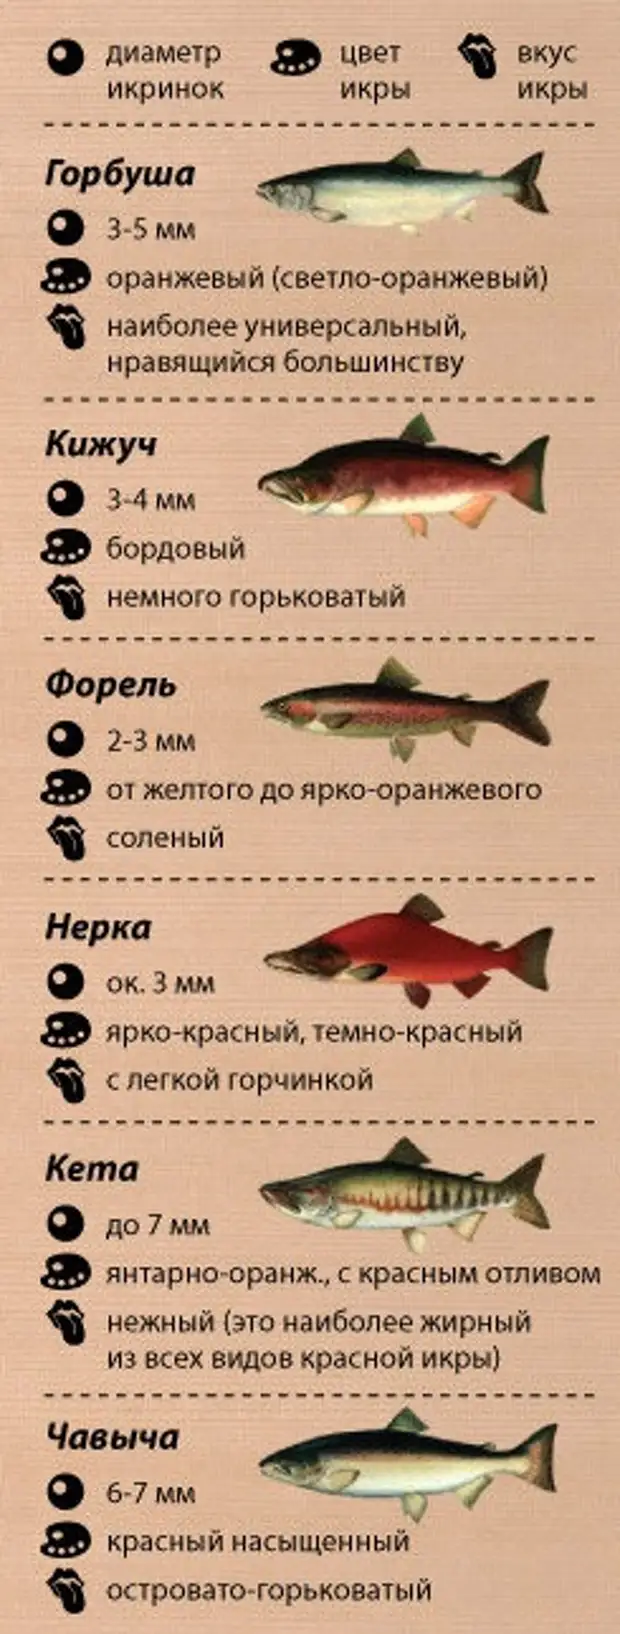 Лососевые рыбы по ценности. Красная рыба виды. Сравнение красной рыбы. Таблица названия красной рыбы. Горбуша и виды красных рыб.